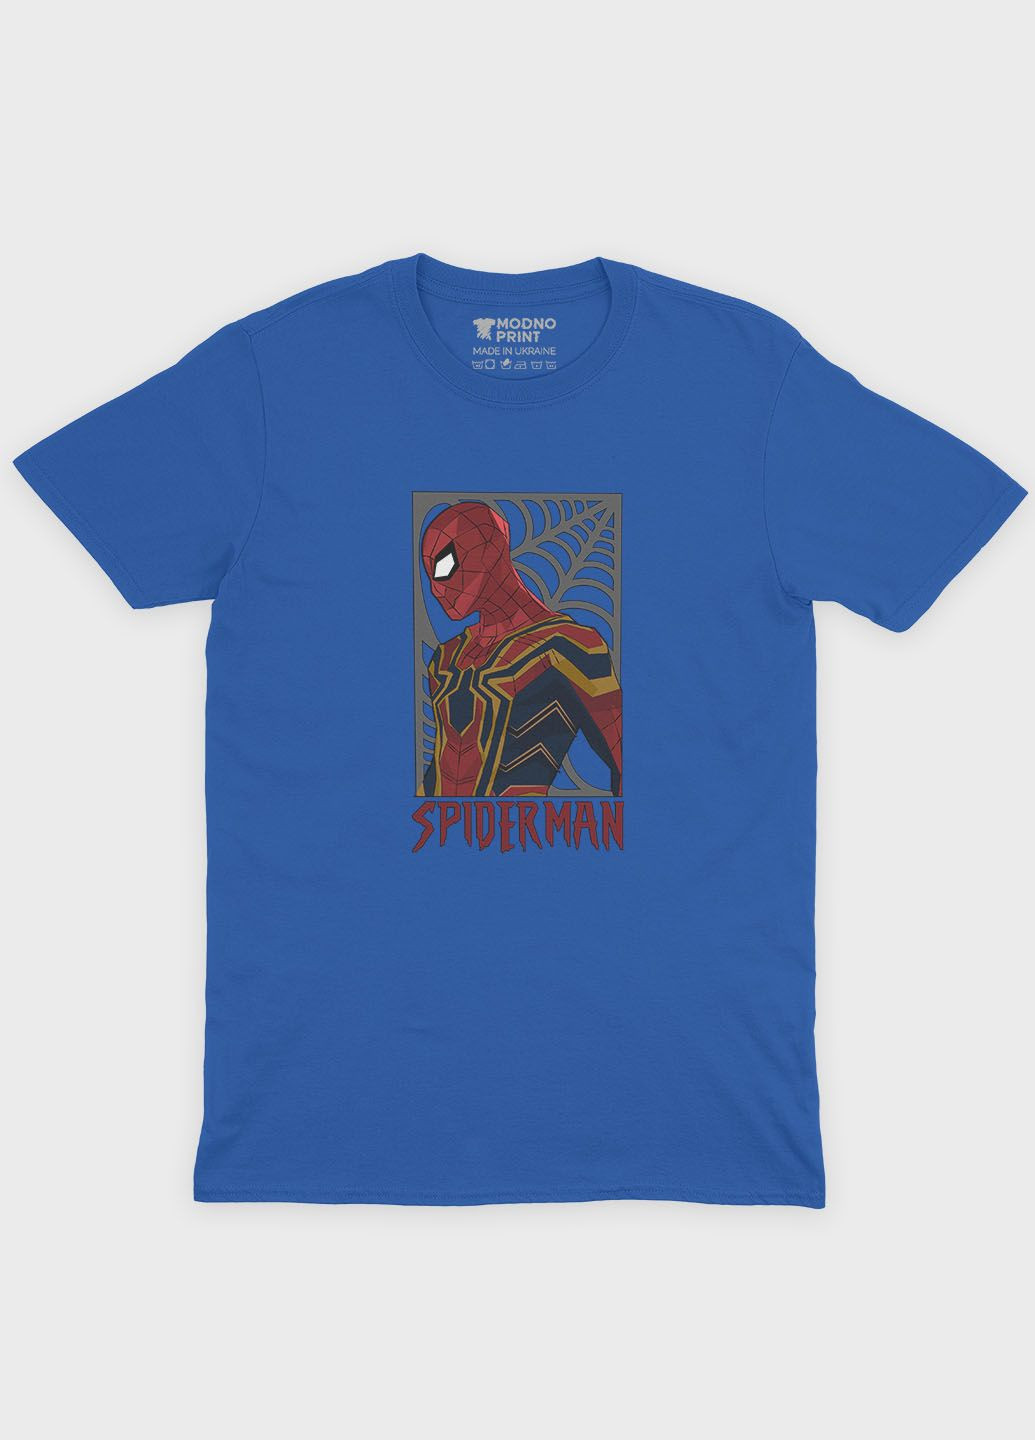 Синяя демисезонная футболка для мальчика с принтом супергероя - человек-паук (ts001-1-brr-006-014-048-b) Modno